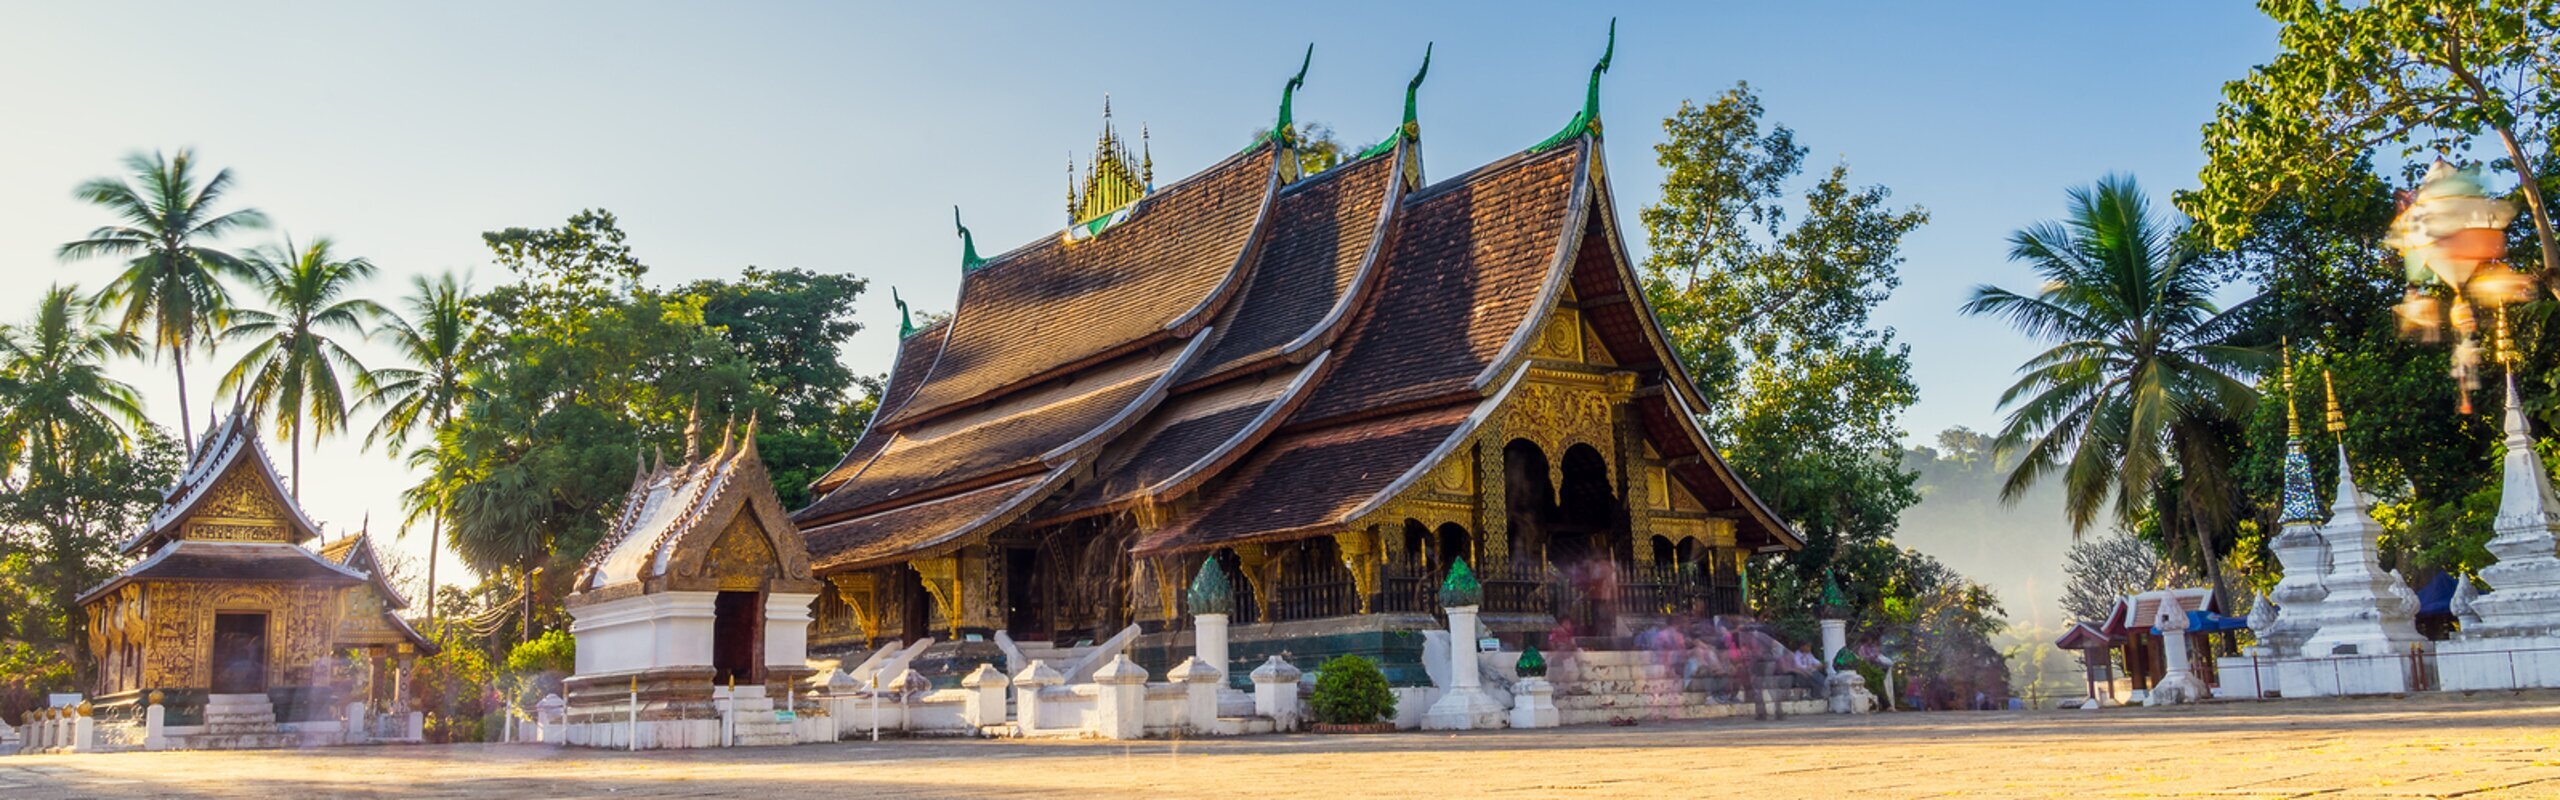 12-Day Laos to Vietnam Tour